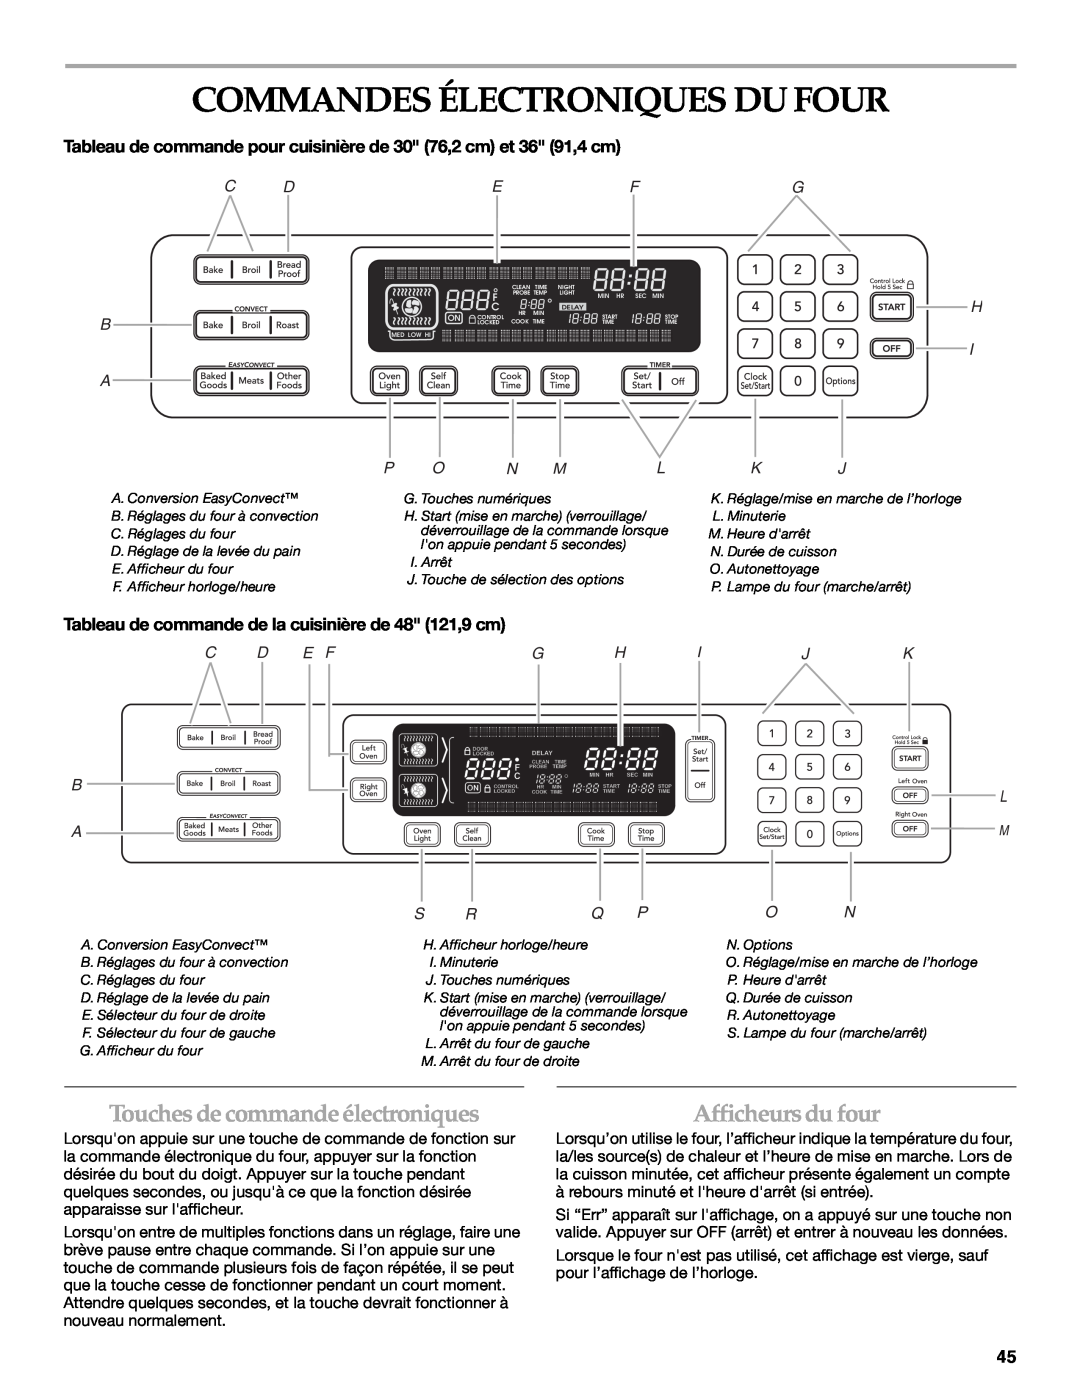 KitchenAid KDRS467 Commandes Électroniques Du Four, Touches de commande électroniques, Afficheurs du four, C D B A, S Rq P 